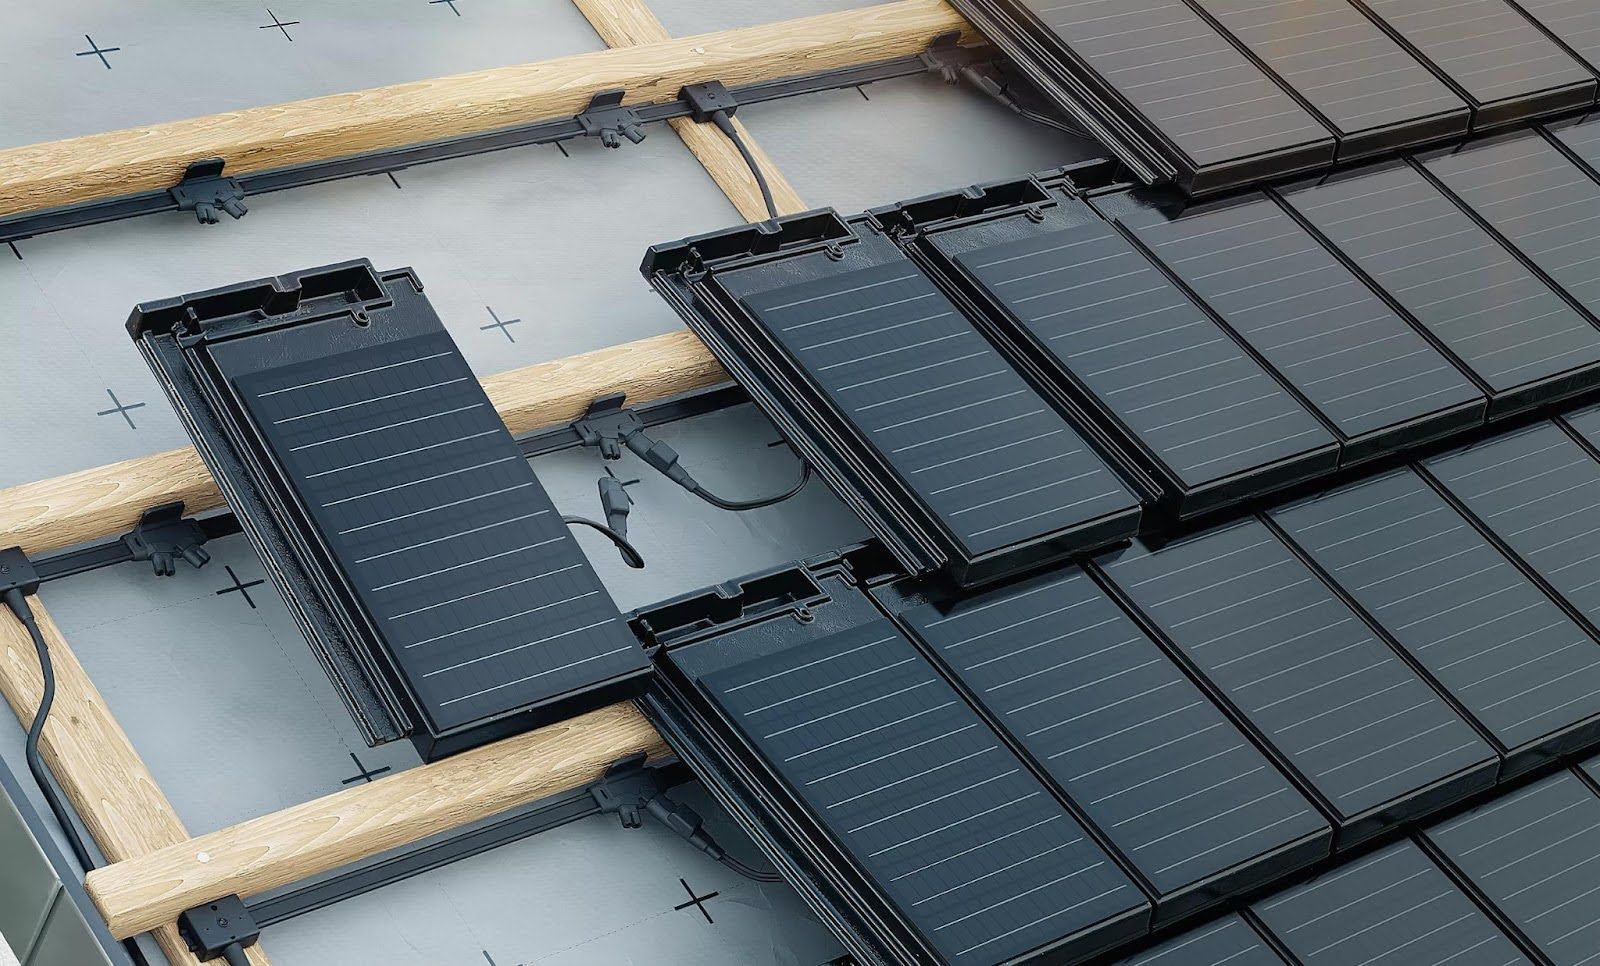 Solardachziegel auf Dach mit Autarq Technologie